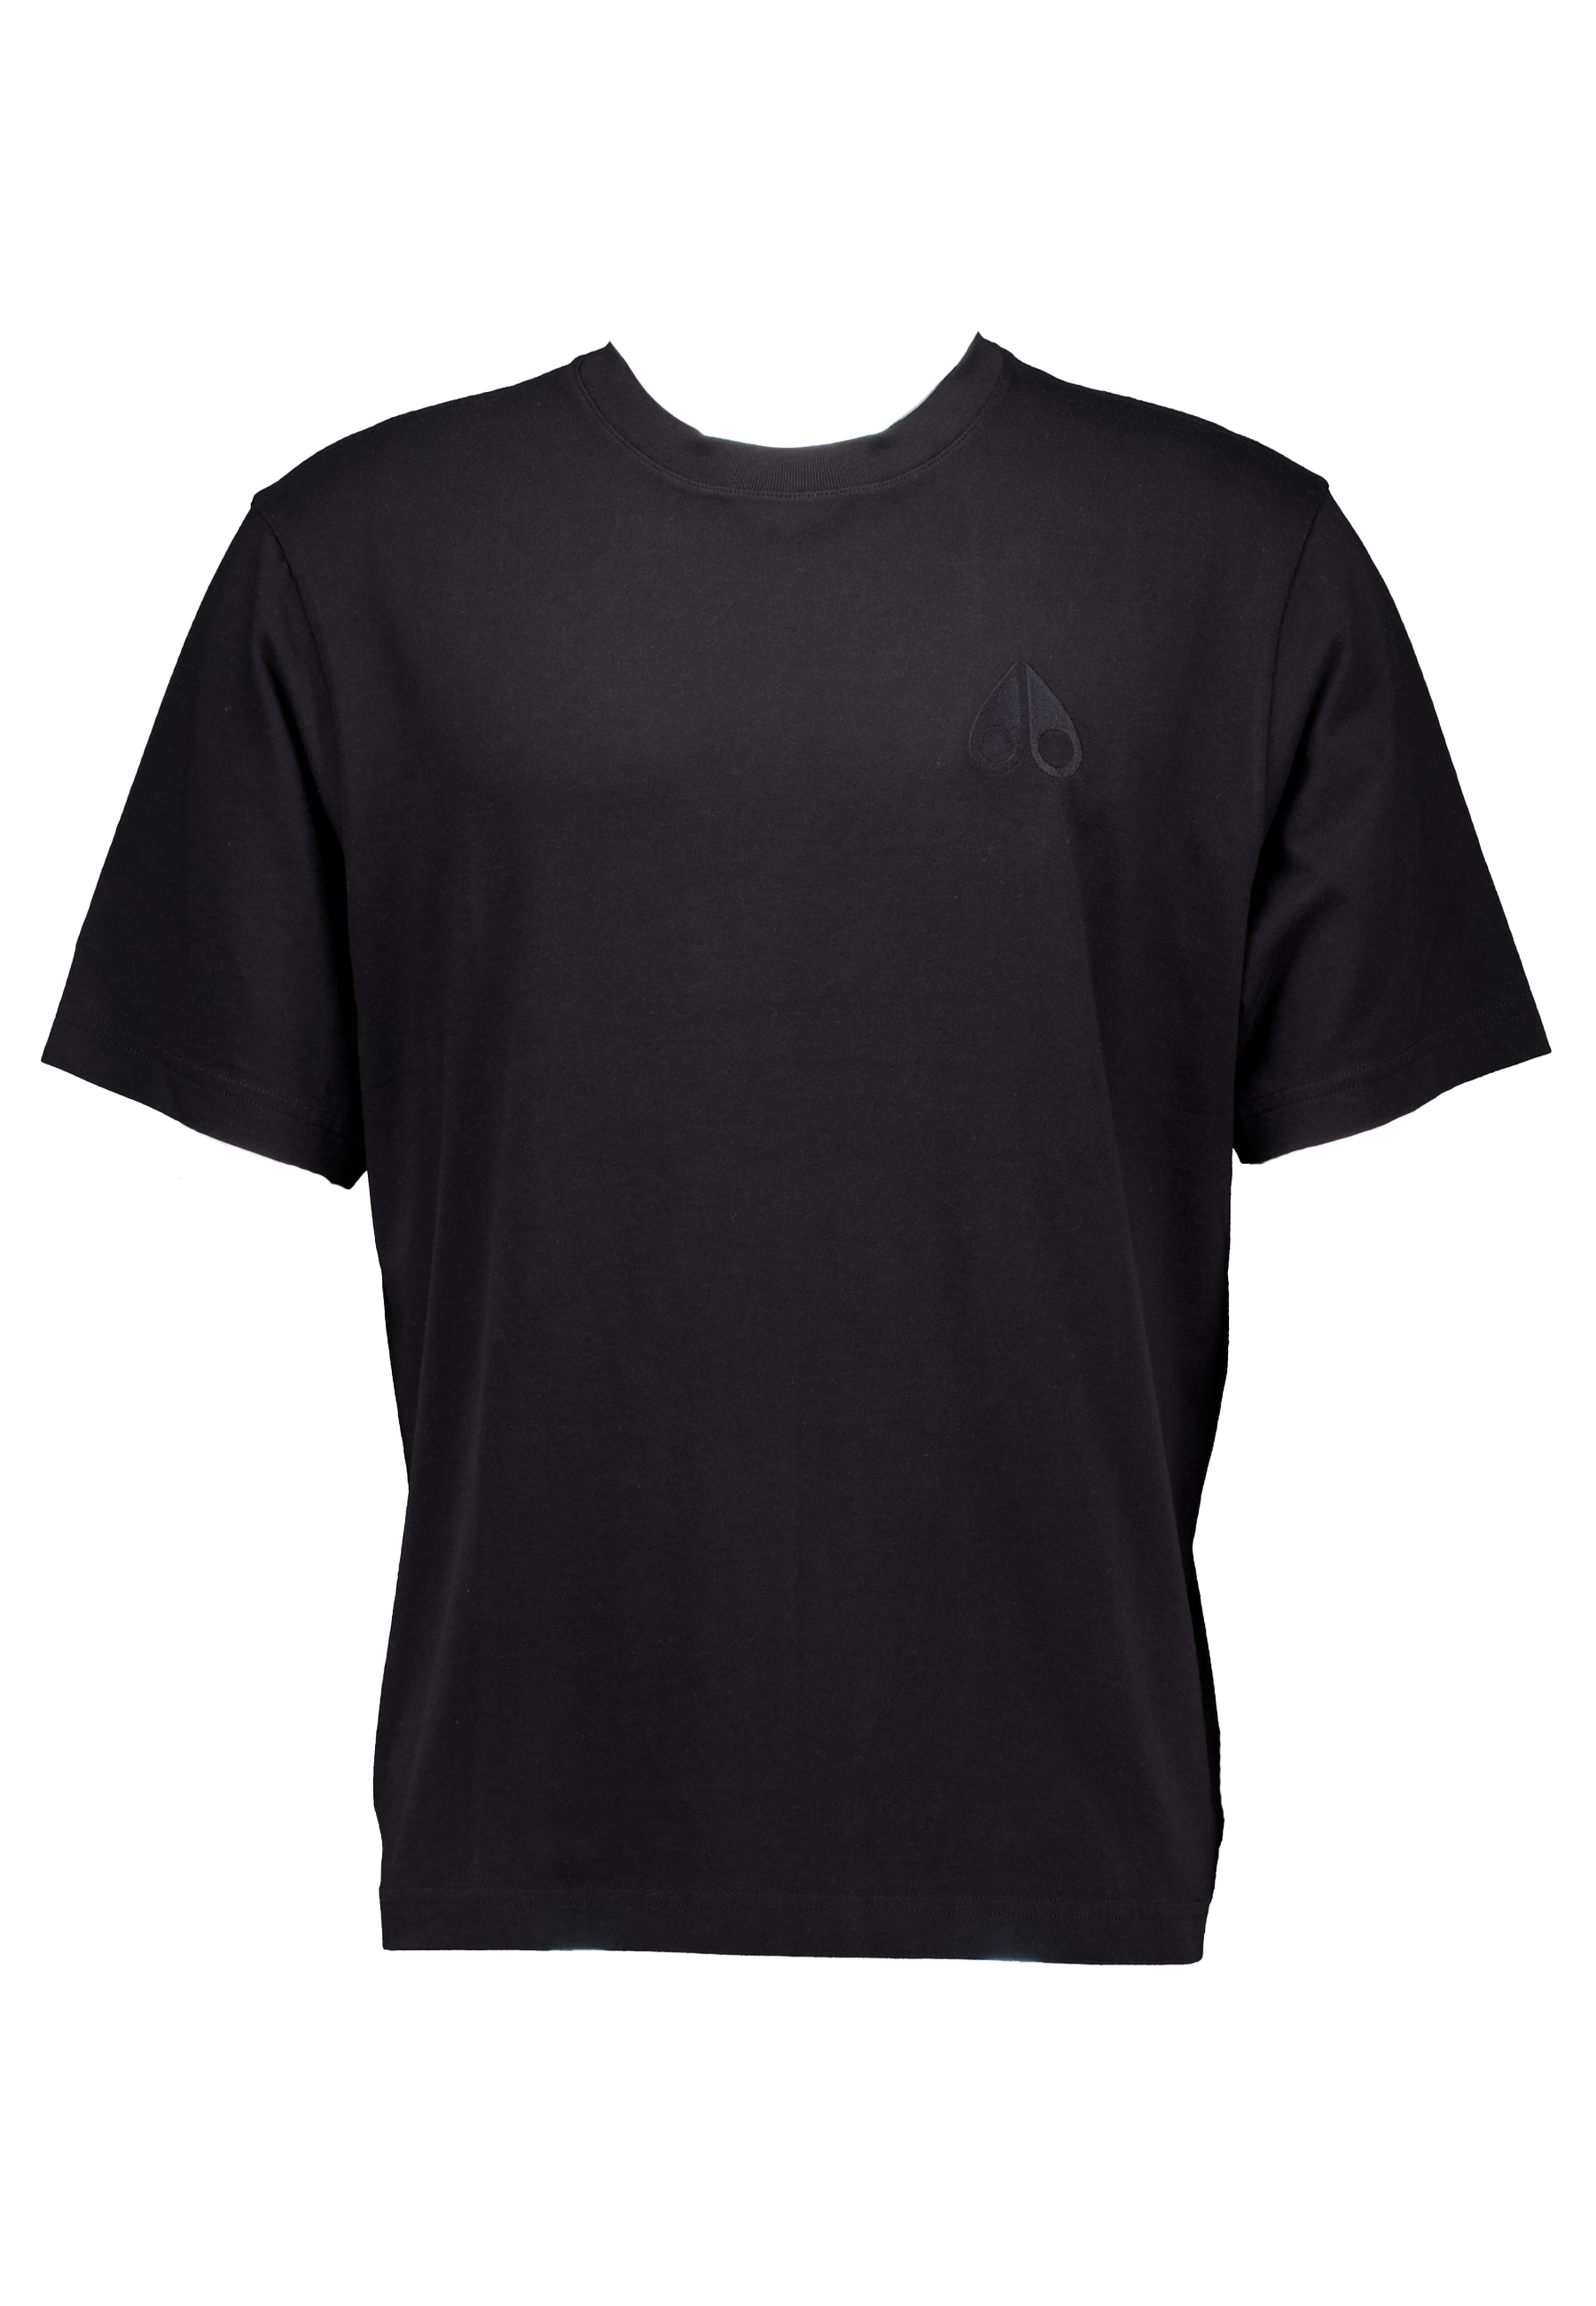 Shirt Zwart Henri t-shirts zwart